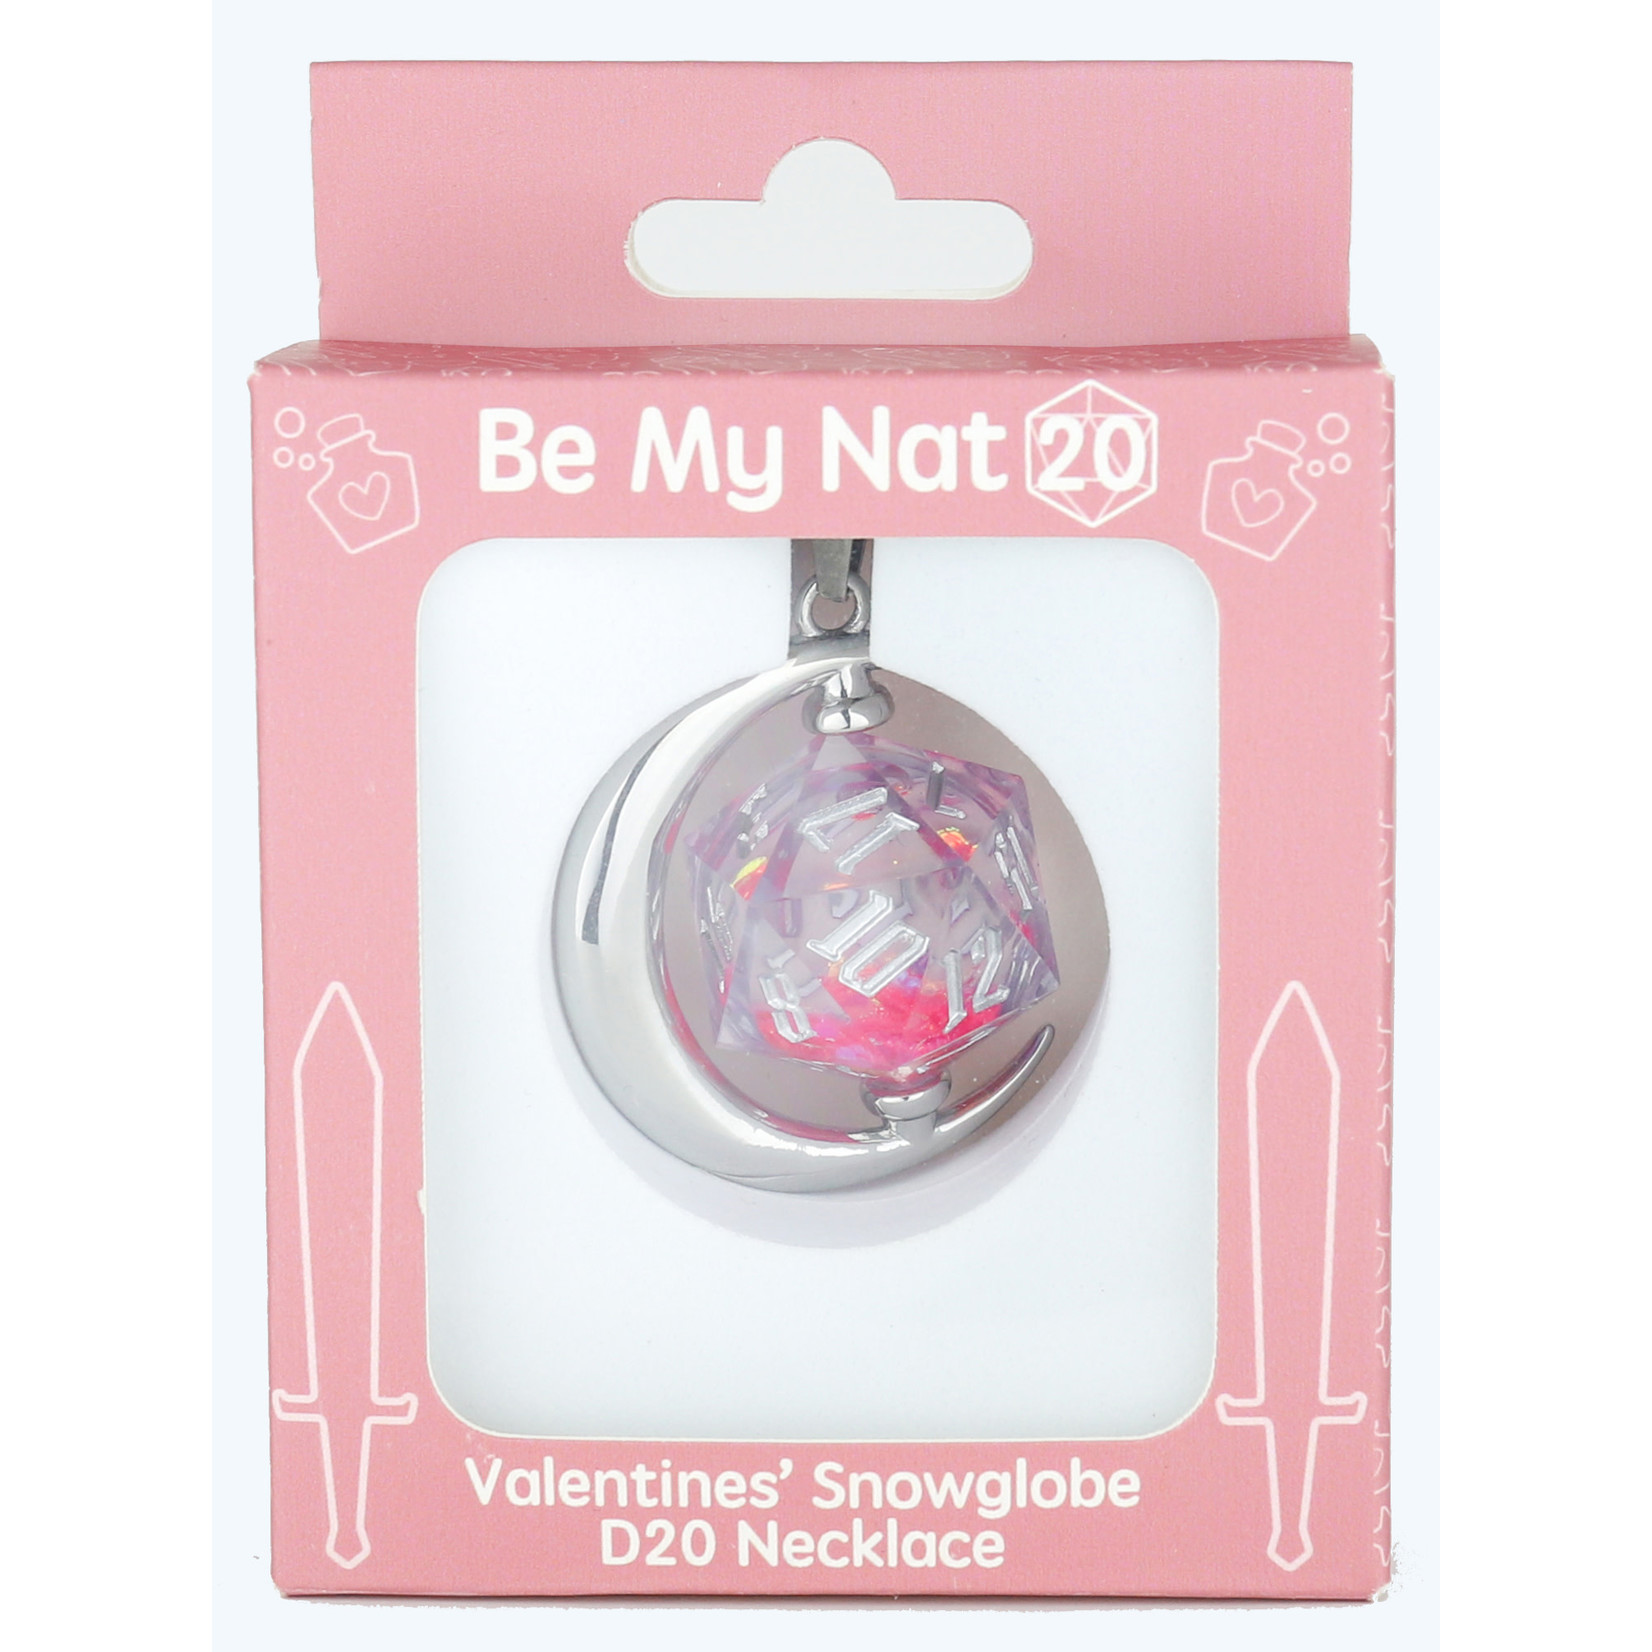 Be My Nat 20 Snowglobe D20 Necklace